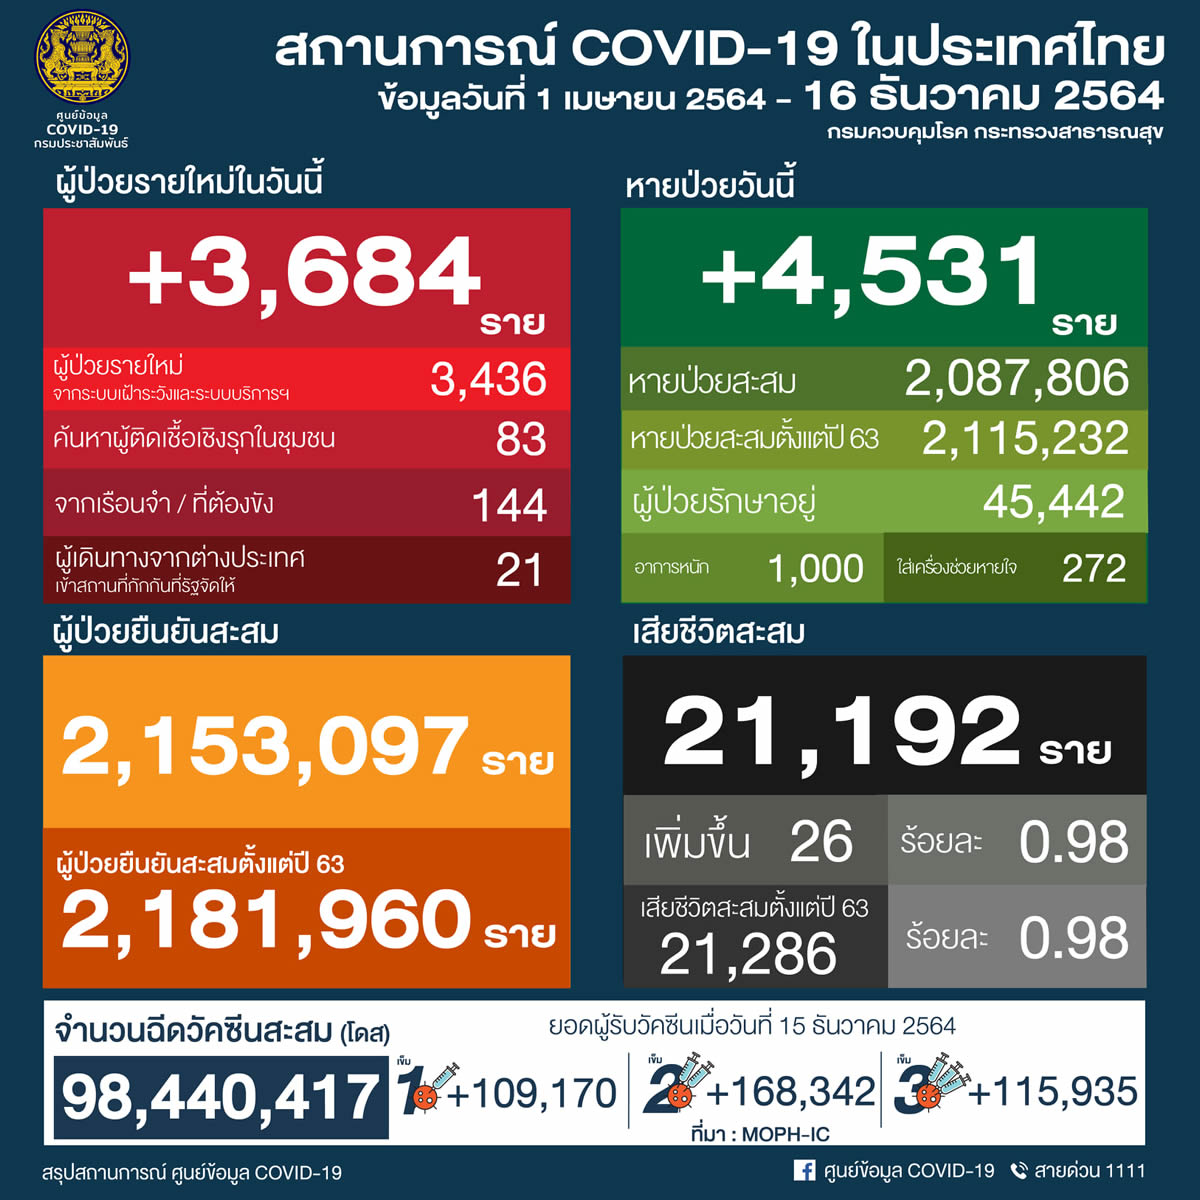 タイ 3,684人陽性 26人死亡／バンコク 572人陽性 2人死亡／チェンマイ 68人陽性［2021年12月16日発表］